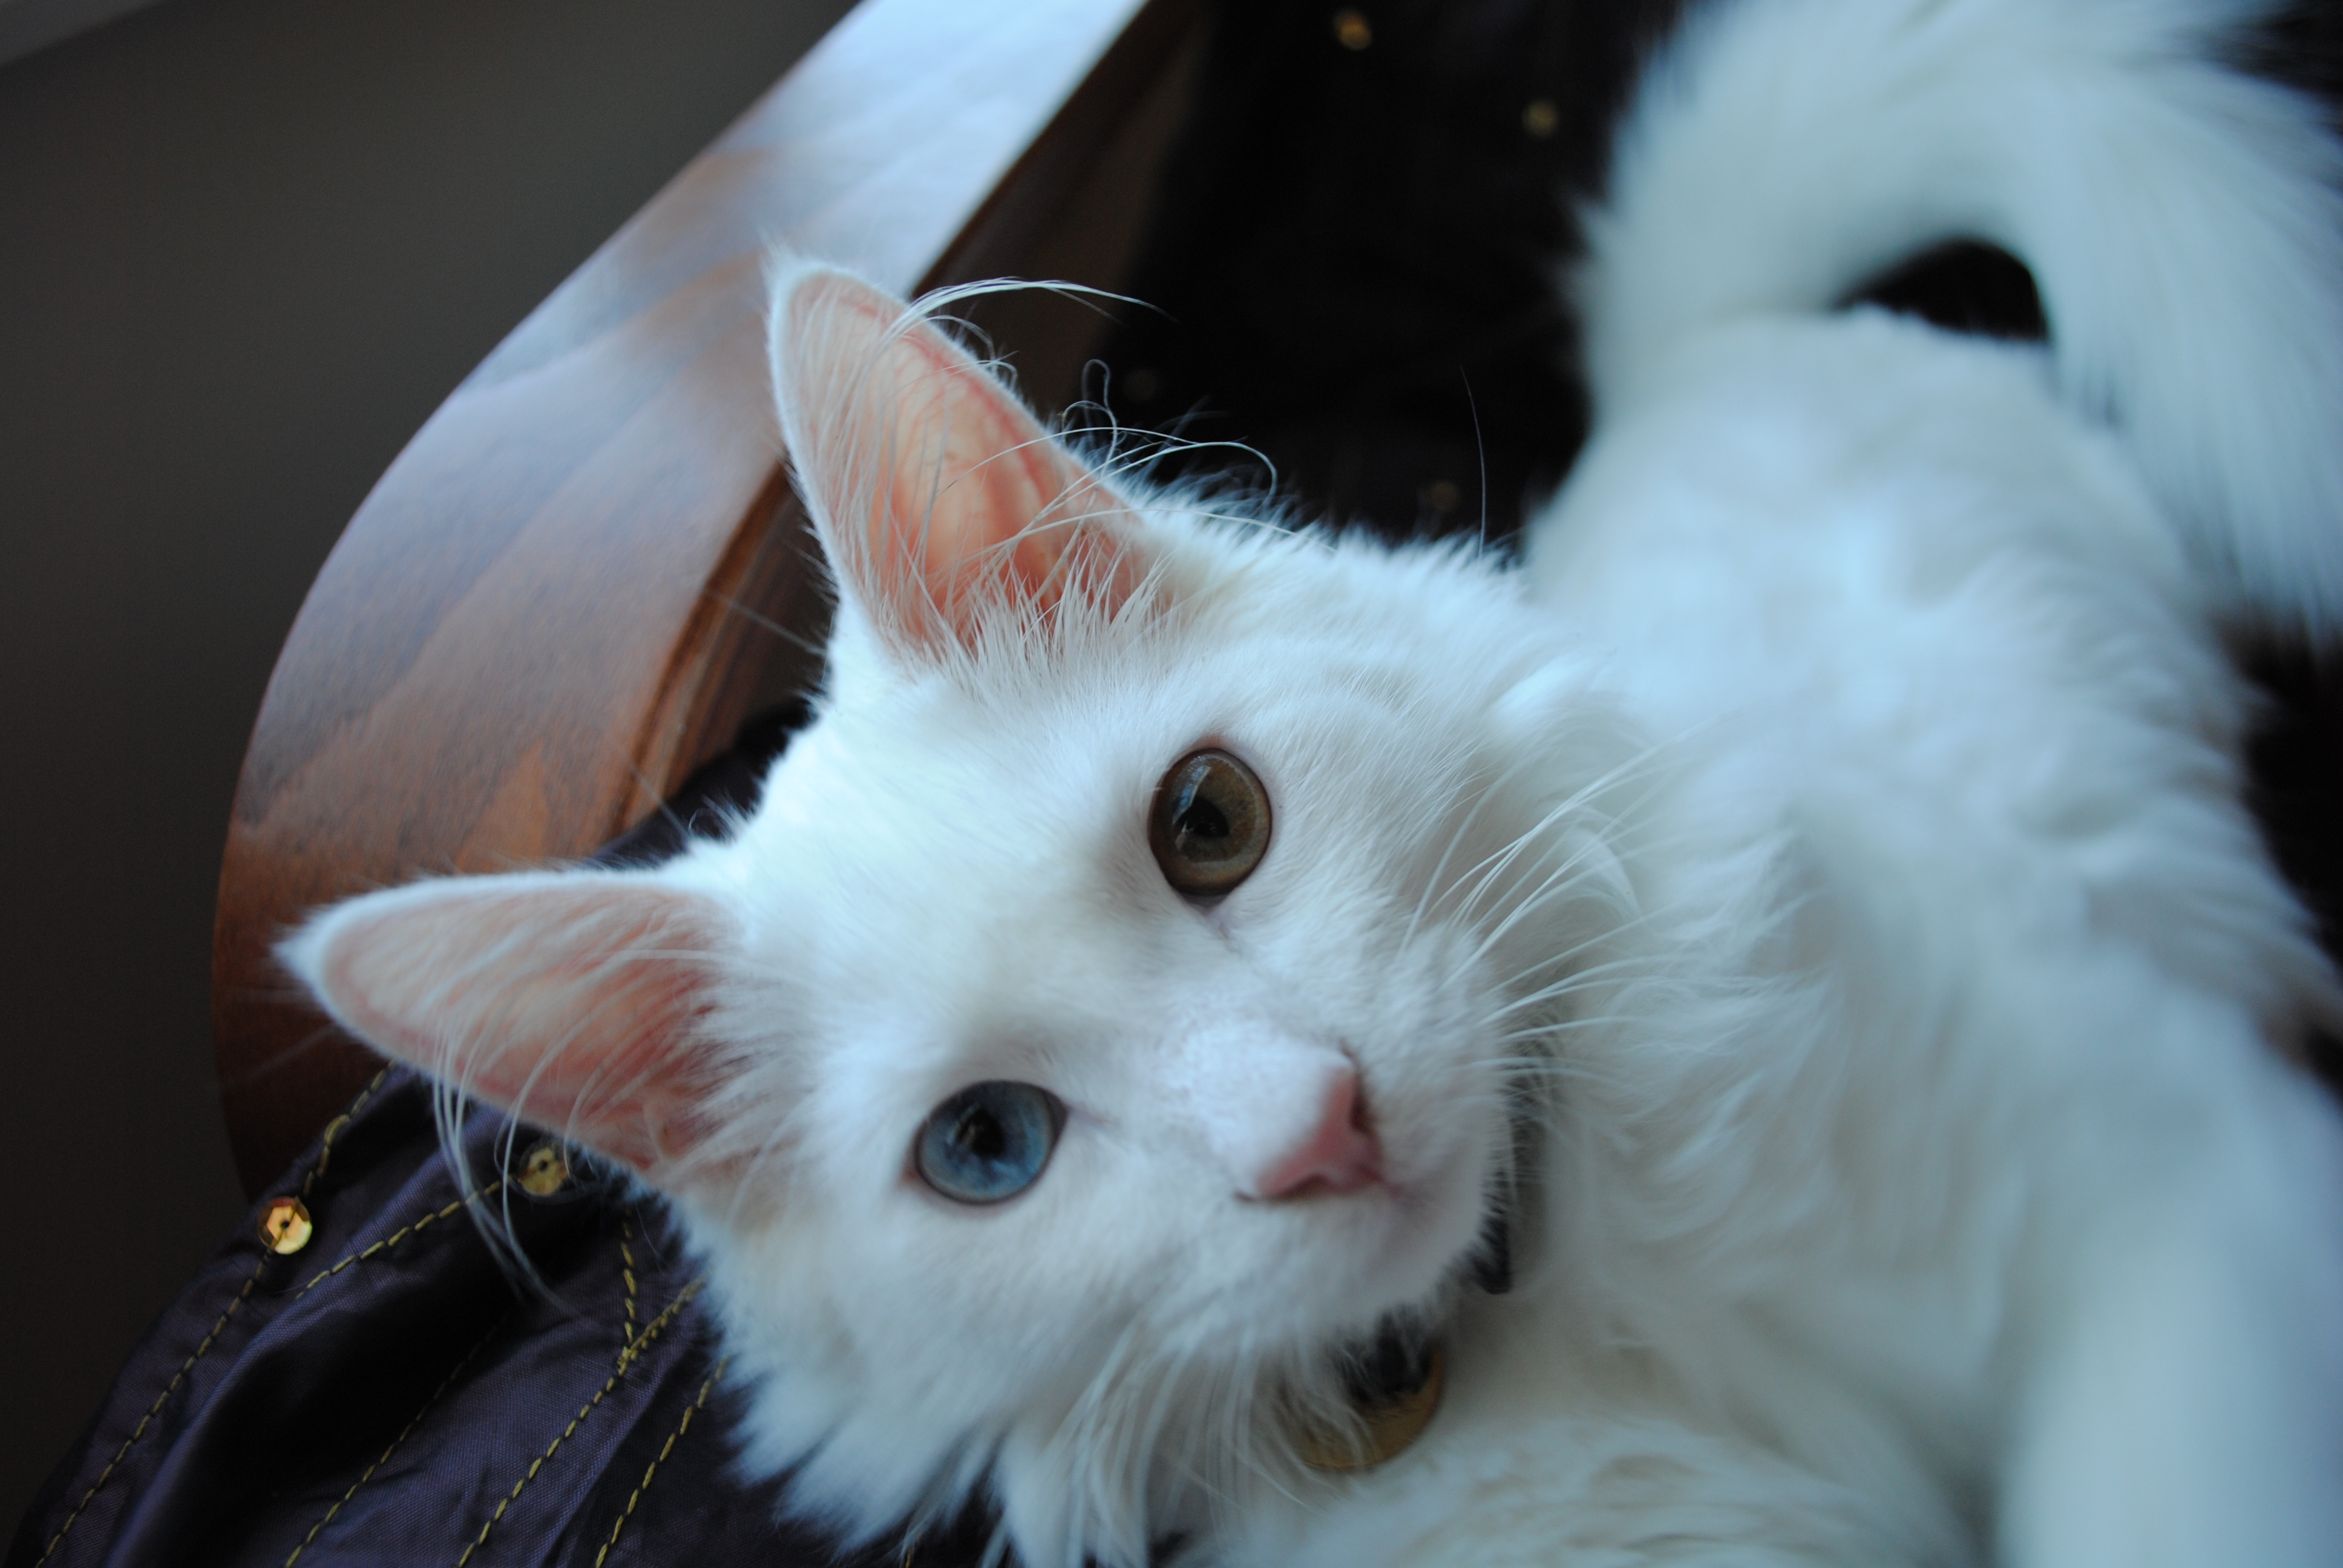 Турецкая ангора (кошка): описание породы и характера